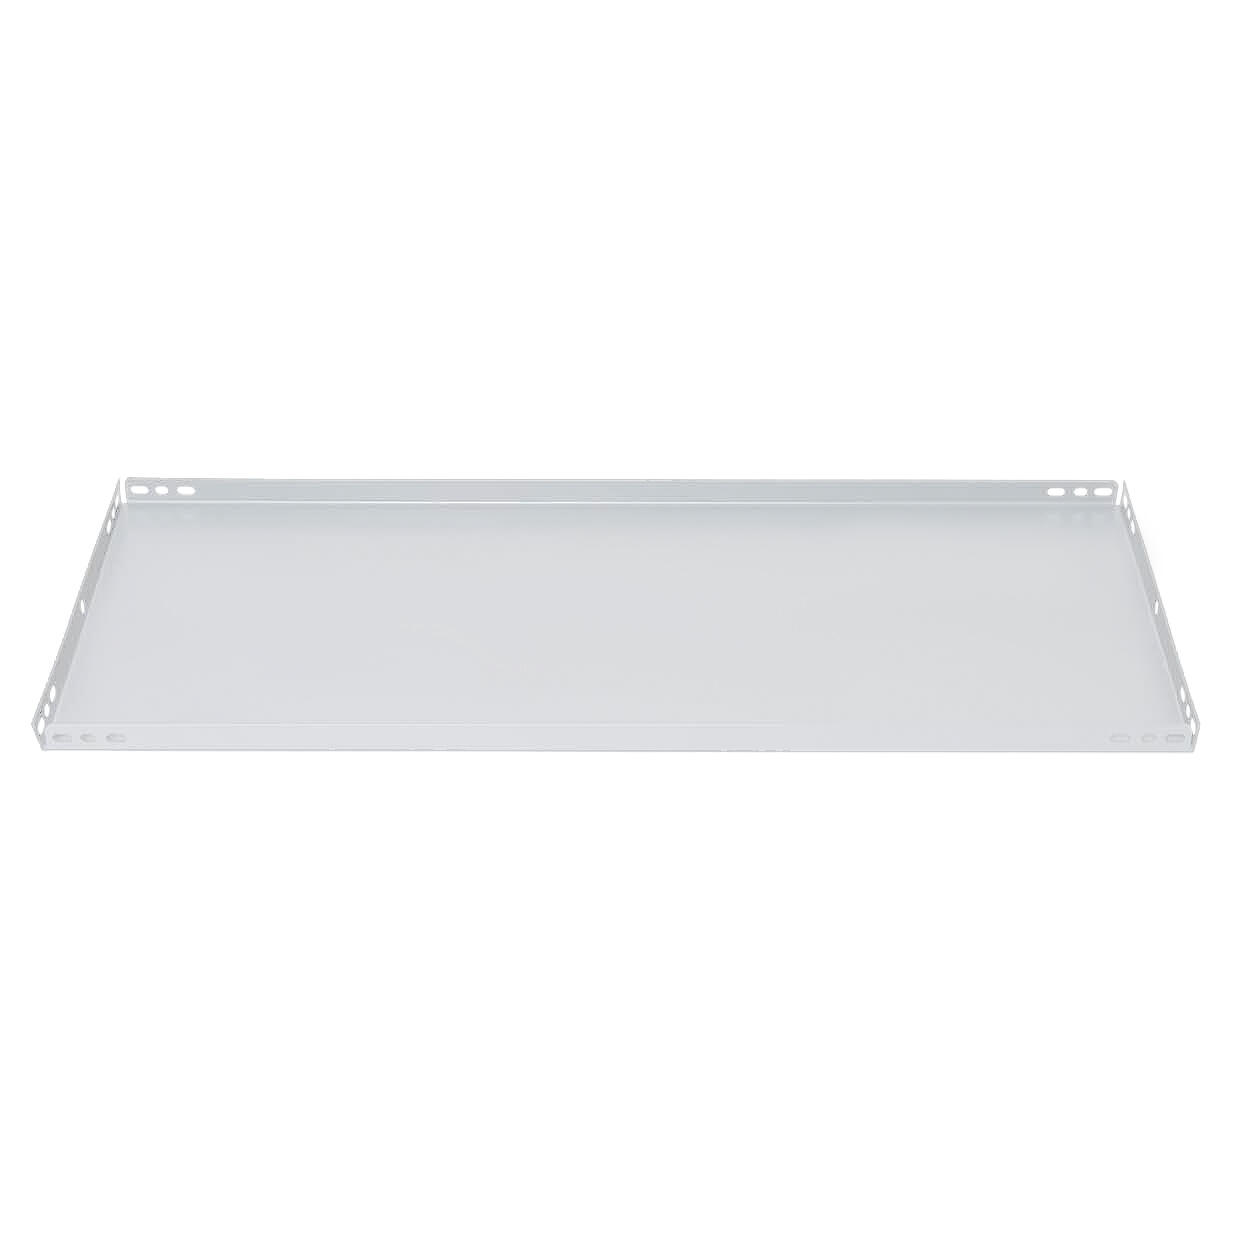 Balda recta para sistema de estantes de acero blanco de 100x30cm